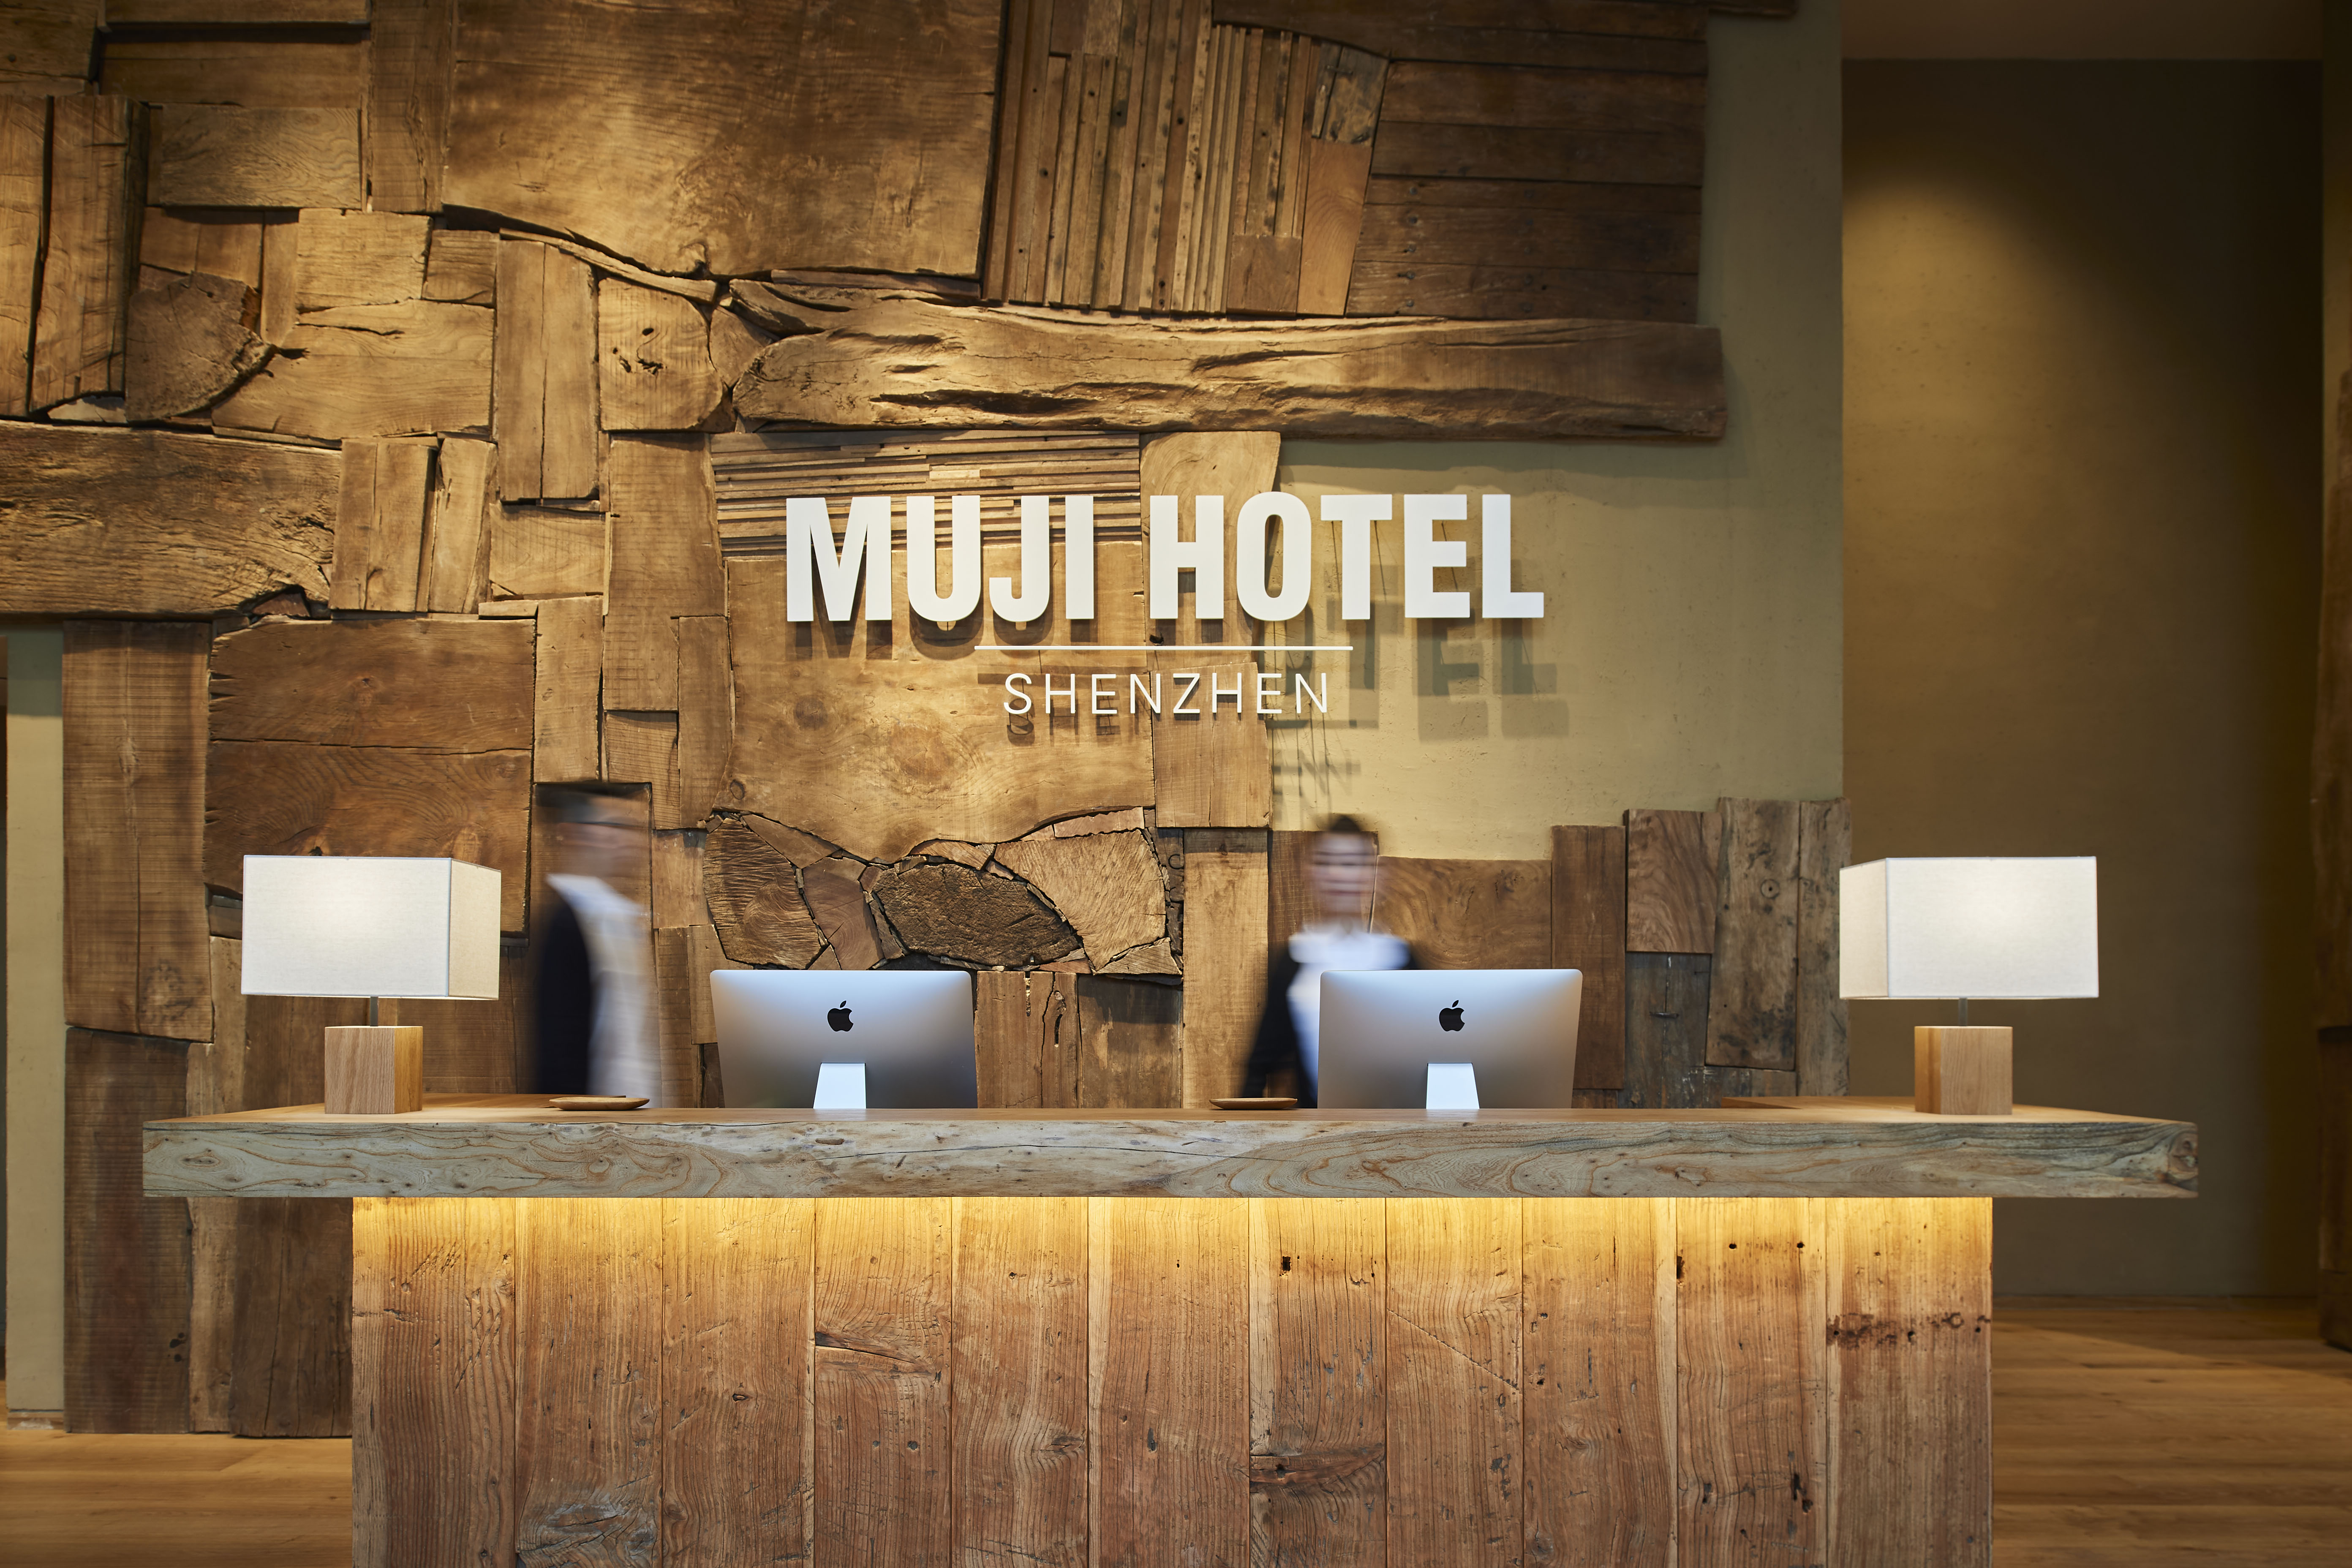 世界初のMUJI HOTEL 「MUJI HOTEL SHENZHEN」がオープン | ニュース | 無印良品